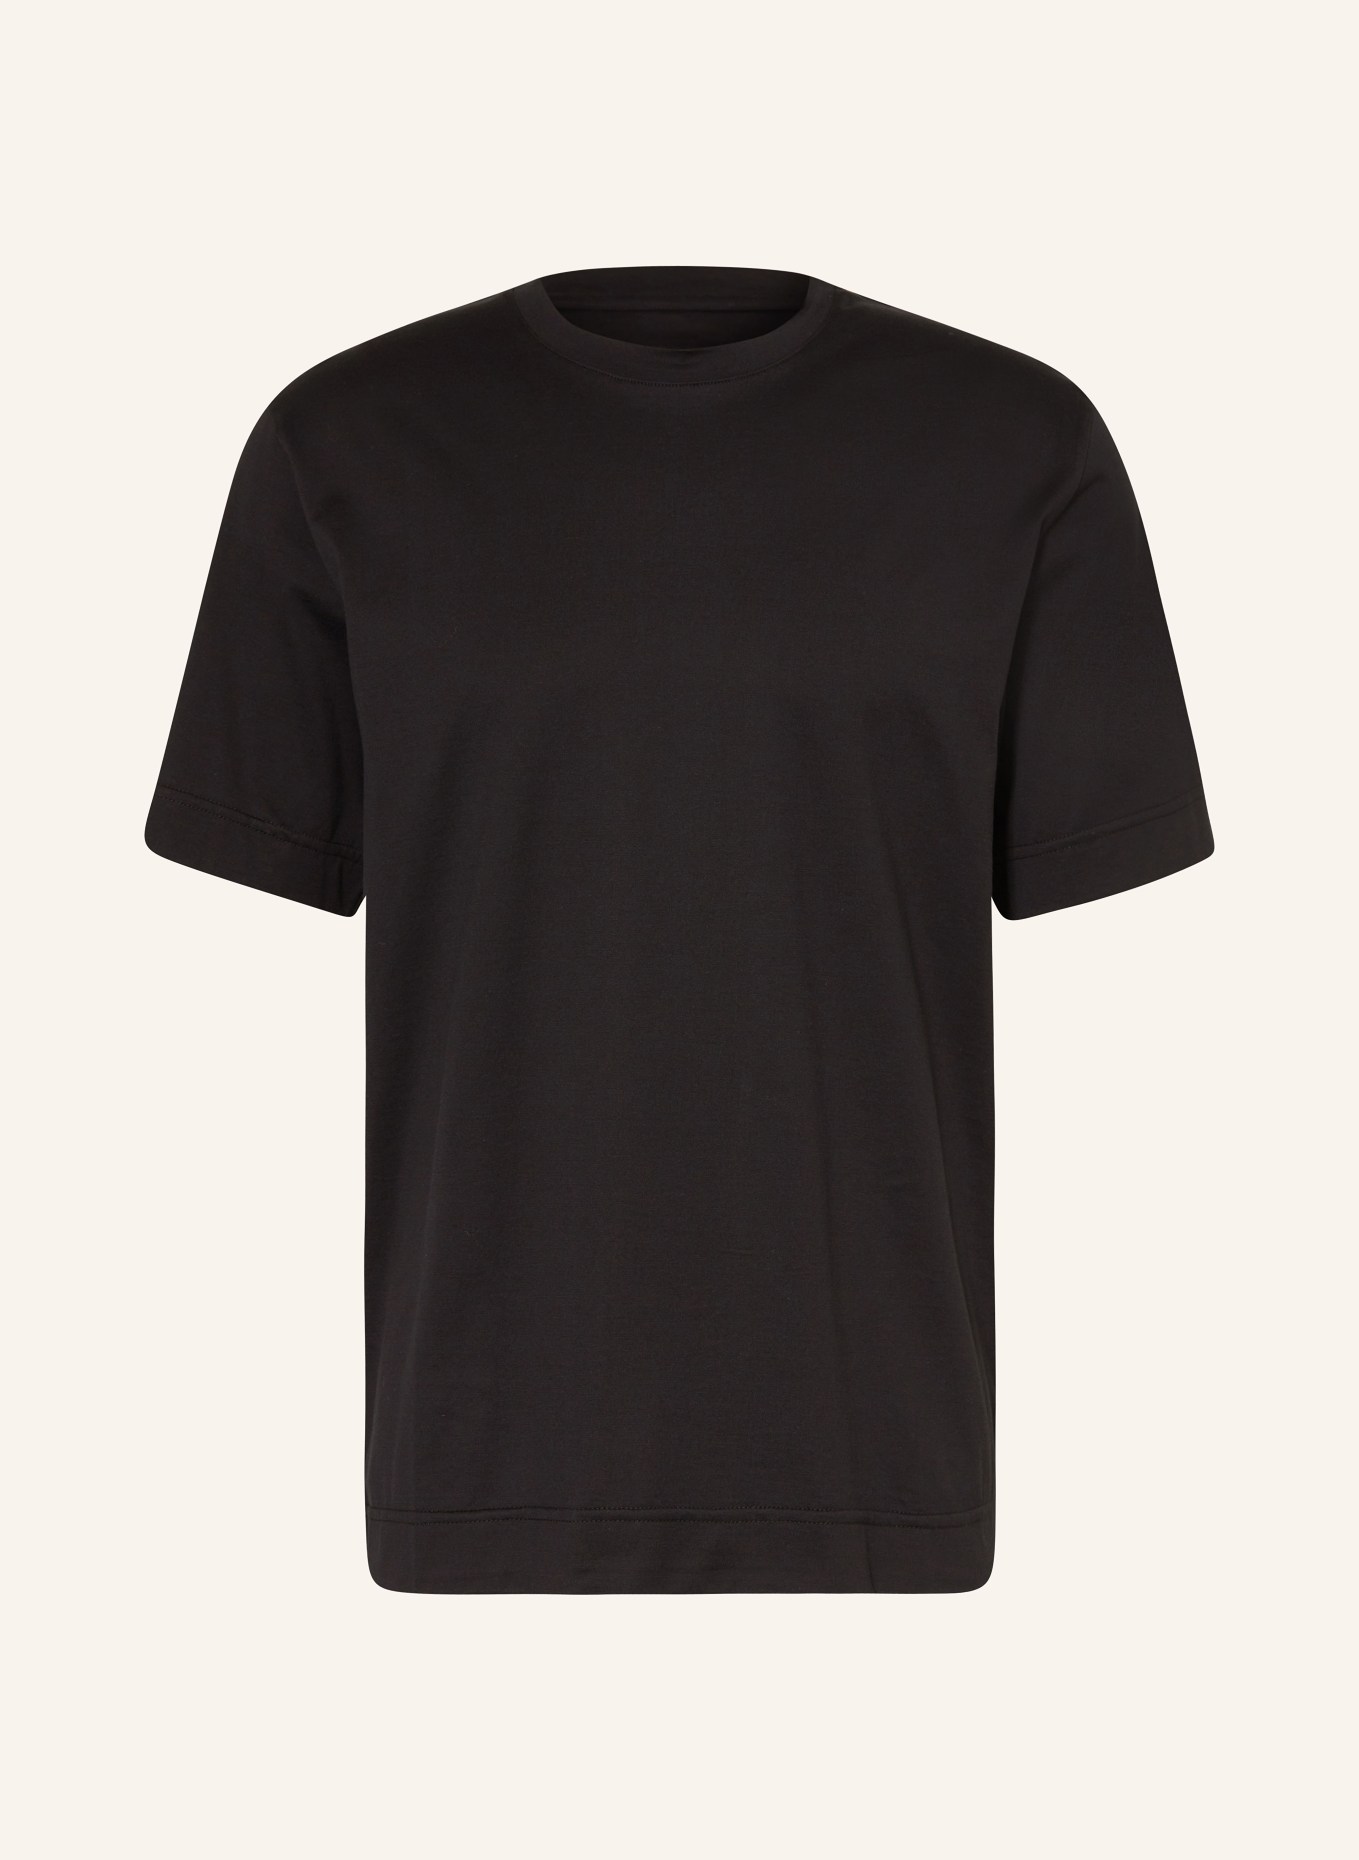 FENDI T-shirt, Kolor: CZARNY (Obrazek 1)